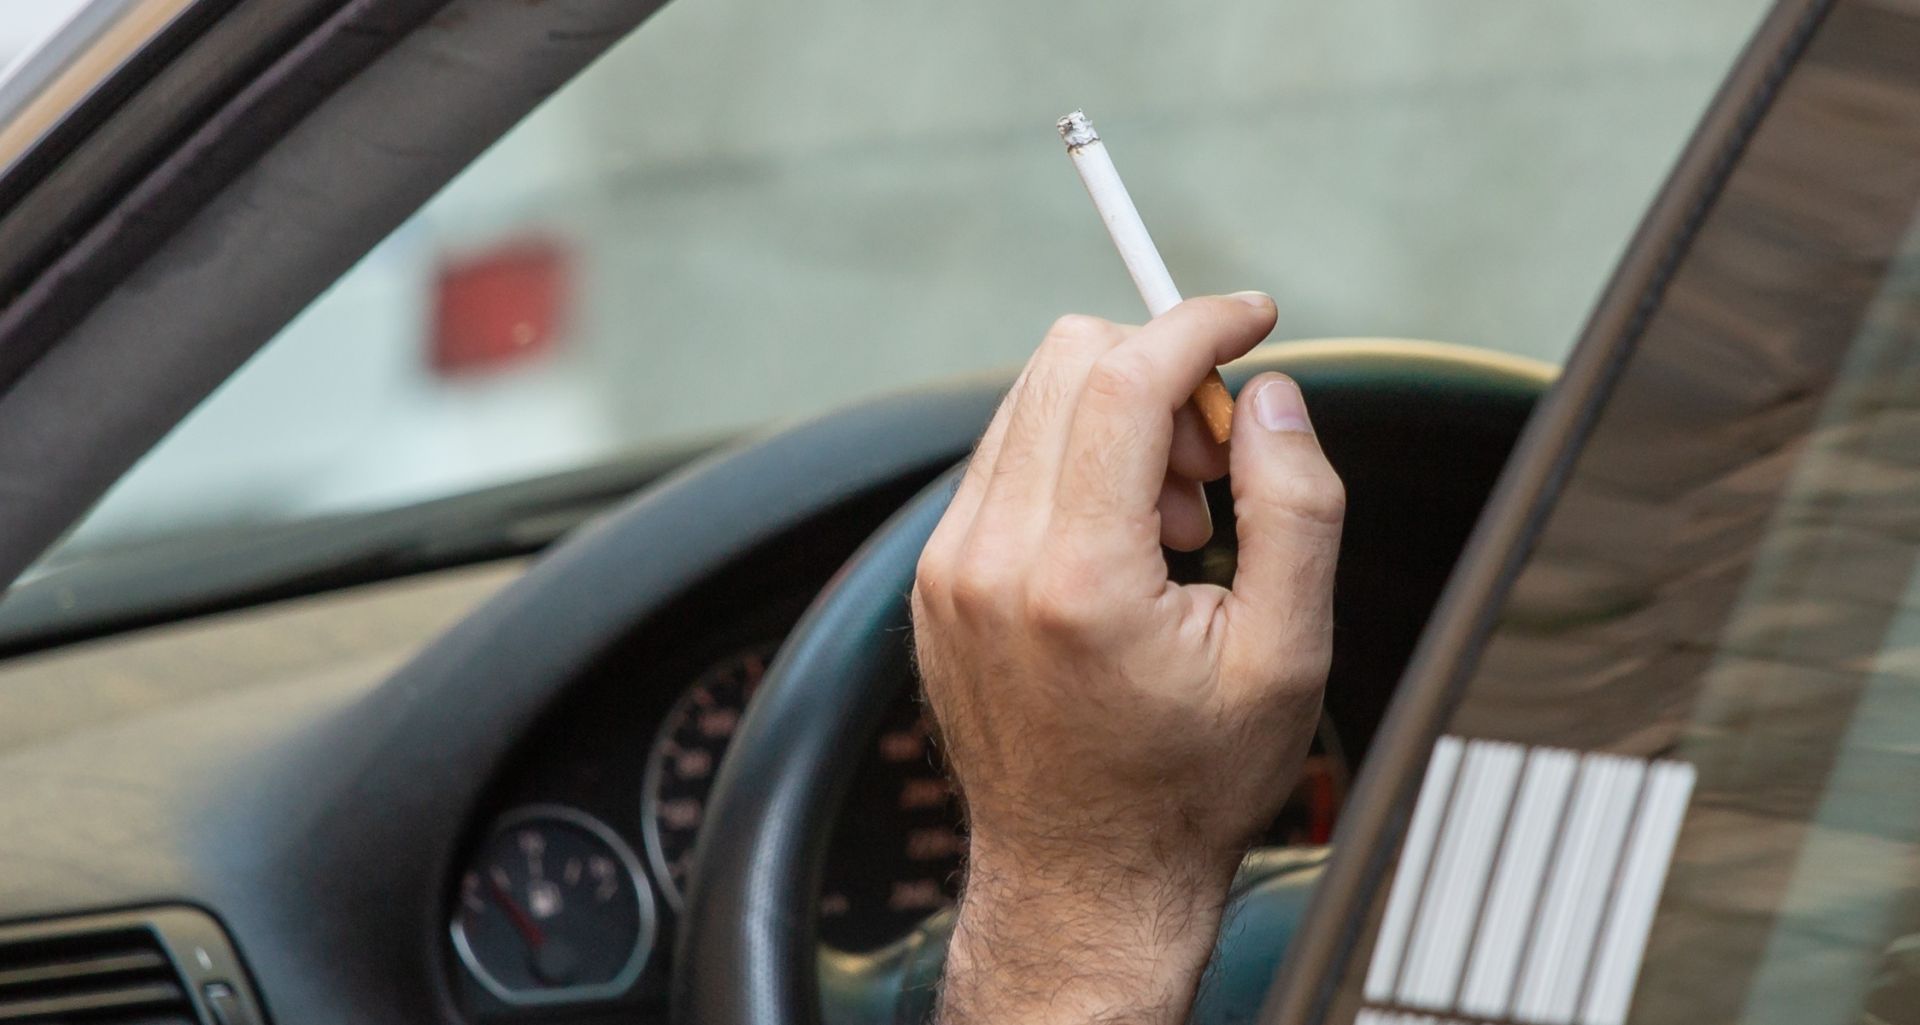 Pušenje cigareta tijekom vožnje 17.10.2018., Dubrovnik - Pusenje u voznji, 
Photo: Grgo Jelavic/PIXSELL